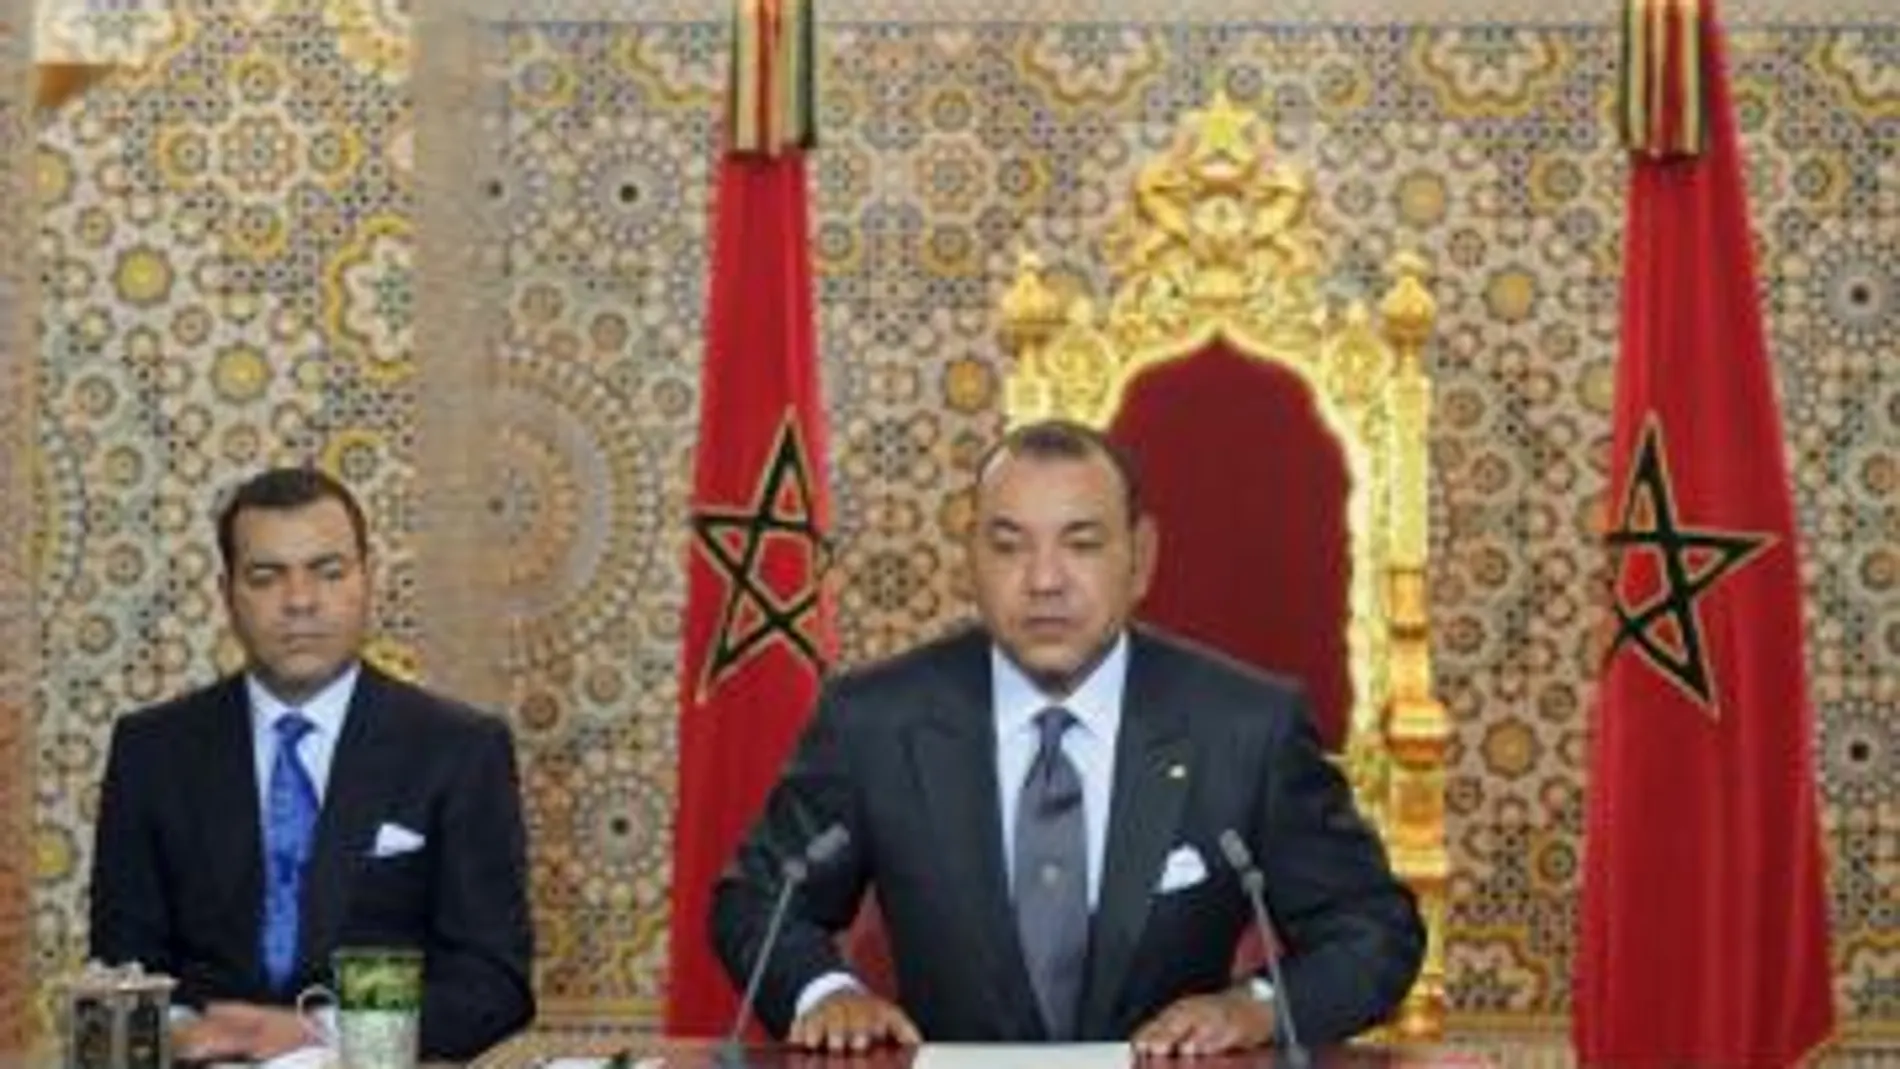 El rey Mohamed VI de Marruecos, durante el discurso que pronunció hoy con motivo del undécimo aniversario de su coronación